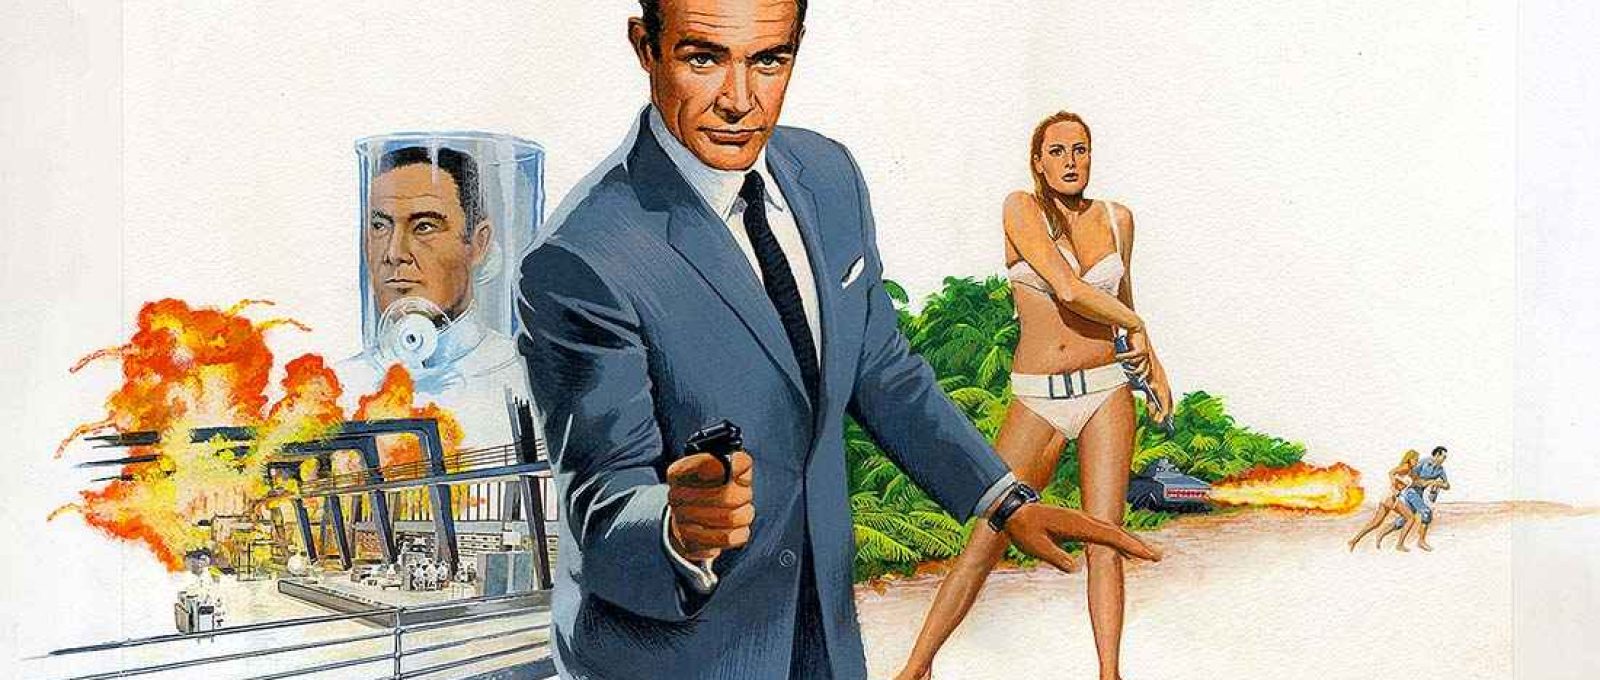 Pôster do filme “007 contra o Satânico Dr. No”, de 1962, com o ator Sean Connery no papel de James Bond (Peter Lorenz/Illustrated 007).